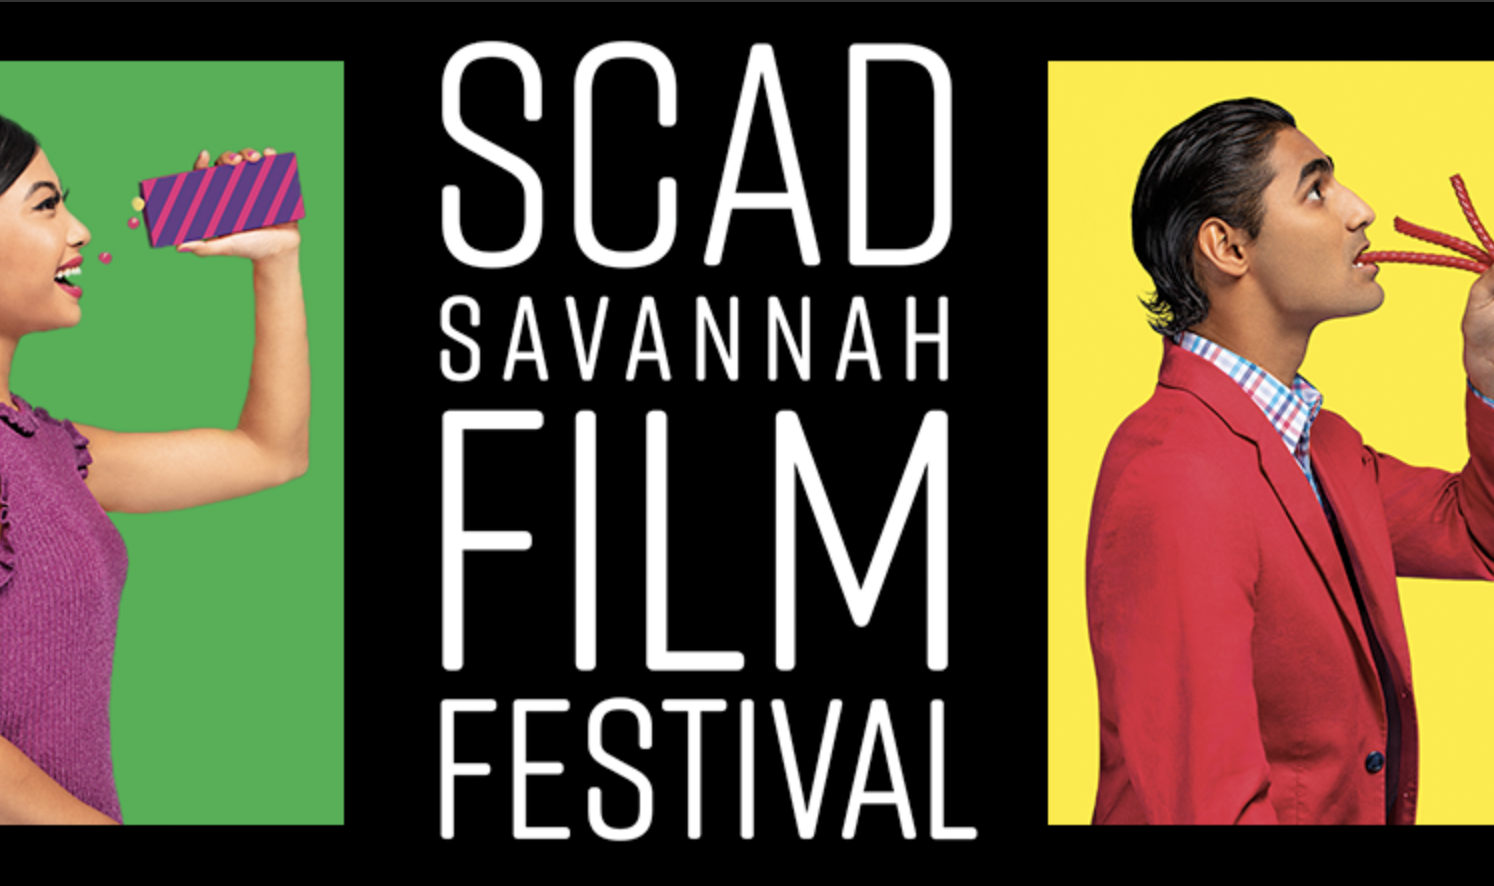 The SCAD Savannah Film Festival Announces Lineup Awardsdaily